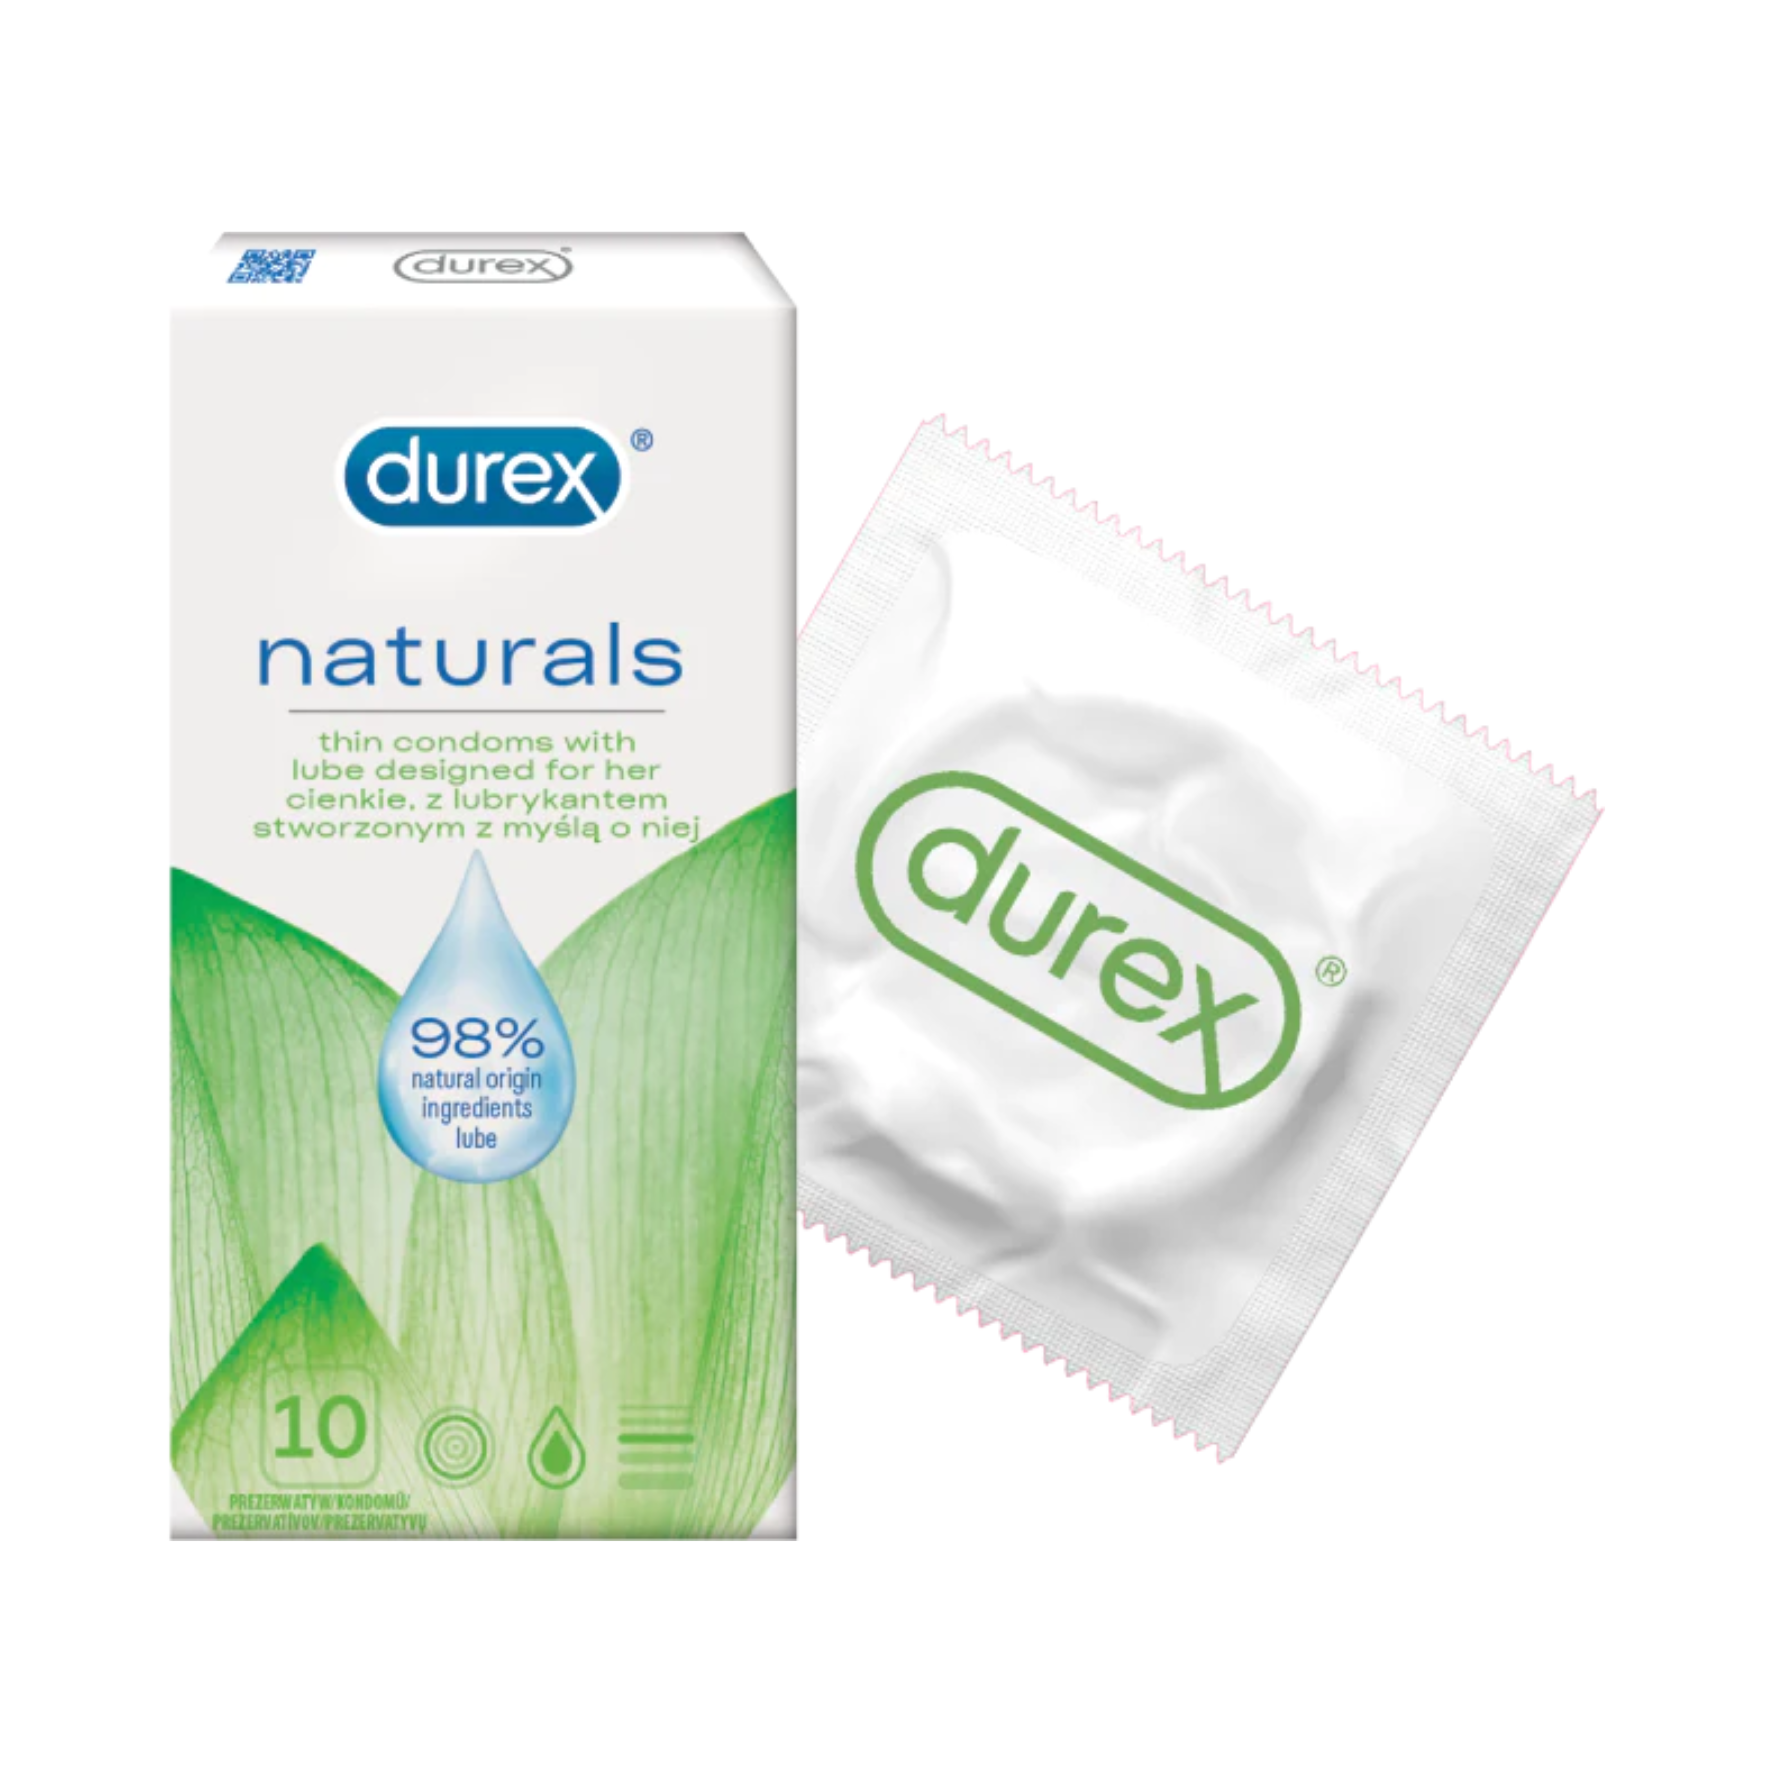 NATŪRALŪS PREZERVATYVAI "DUREX NATURALS" - 10 VNT.  
"Durex Naturals" -  išskirtiniai dermatologiškai patikrinti  prezervatyvai sukurti specialiai jautrią gleivinę turintiems malonumų mėgėjams. 
Šie prezervatyvai sukurti  iš natūralaus latekso  ir yra  padengti vandens pagrindo lubrikantu, sudarytu iš 98% natūralių ingredientų  be dirbtinių dažiklių ir kvapiklių. 
Taip pat jie yra  itin ploni, turi rezervuarą spermai  ir yra lengvai uždedami bei nuimami. 
Prieš užsidėdami prezervatyvą įsitikinkite, kad jūsų varpa neliečia partnerio lytinių organų srities – sperma iš varpos gali išeiti dar prieš pilną ejakuliaciją.   
*Atminkite, kad nė viena kontraceptinė priemonė nėra 100 % veiksminga nuo nėštumo, ŽIV ar lytiškai plintančių infekcijų.